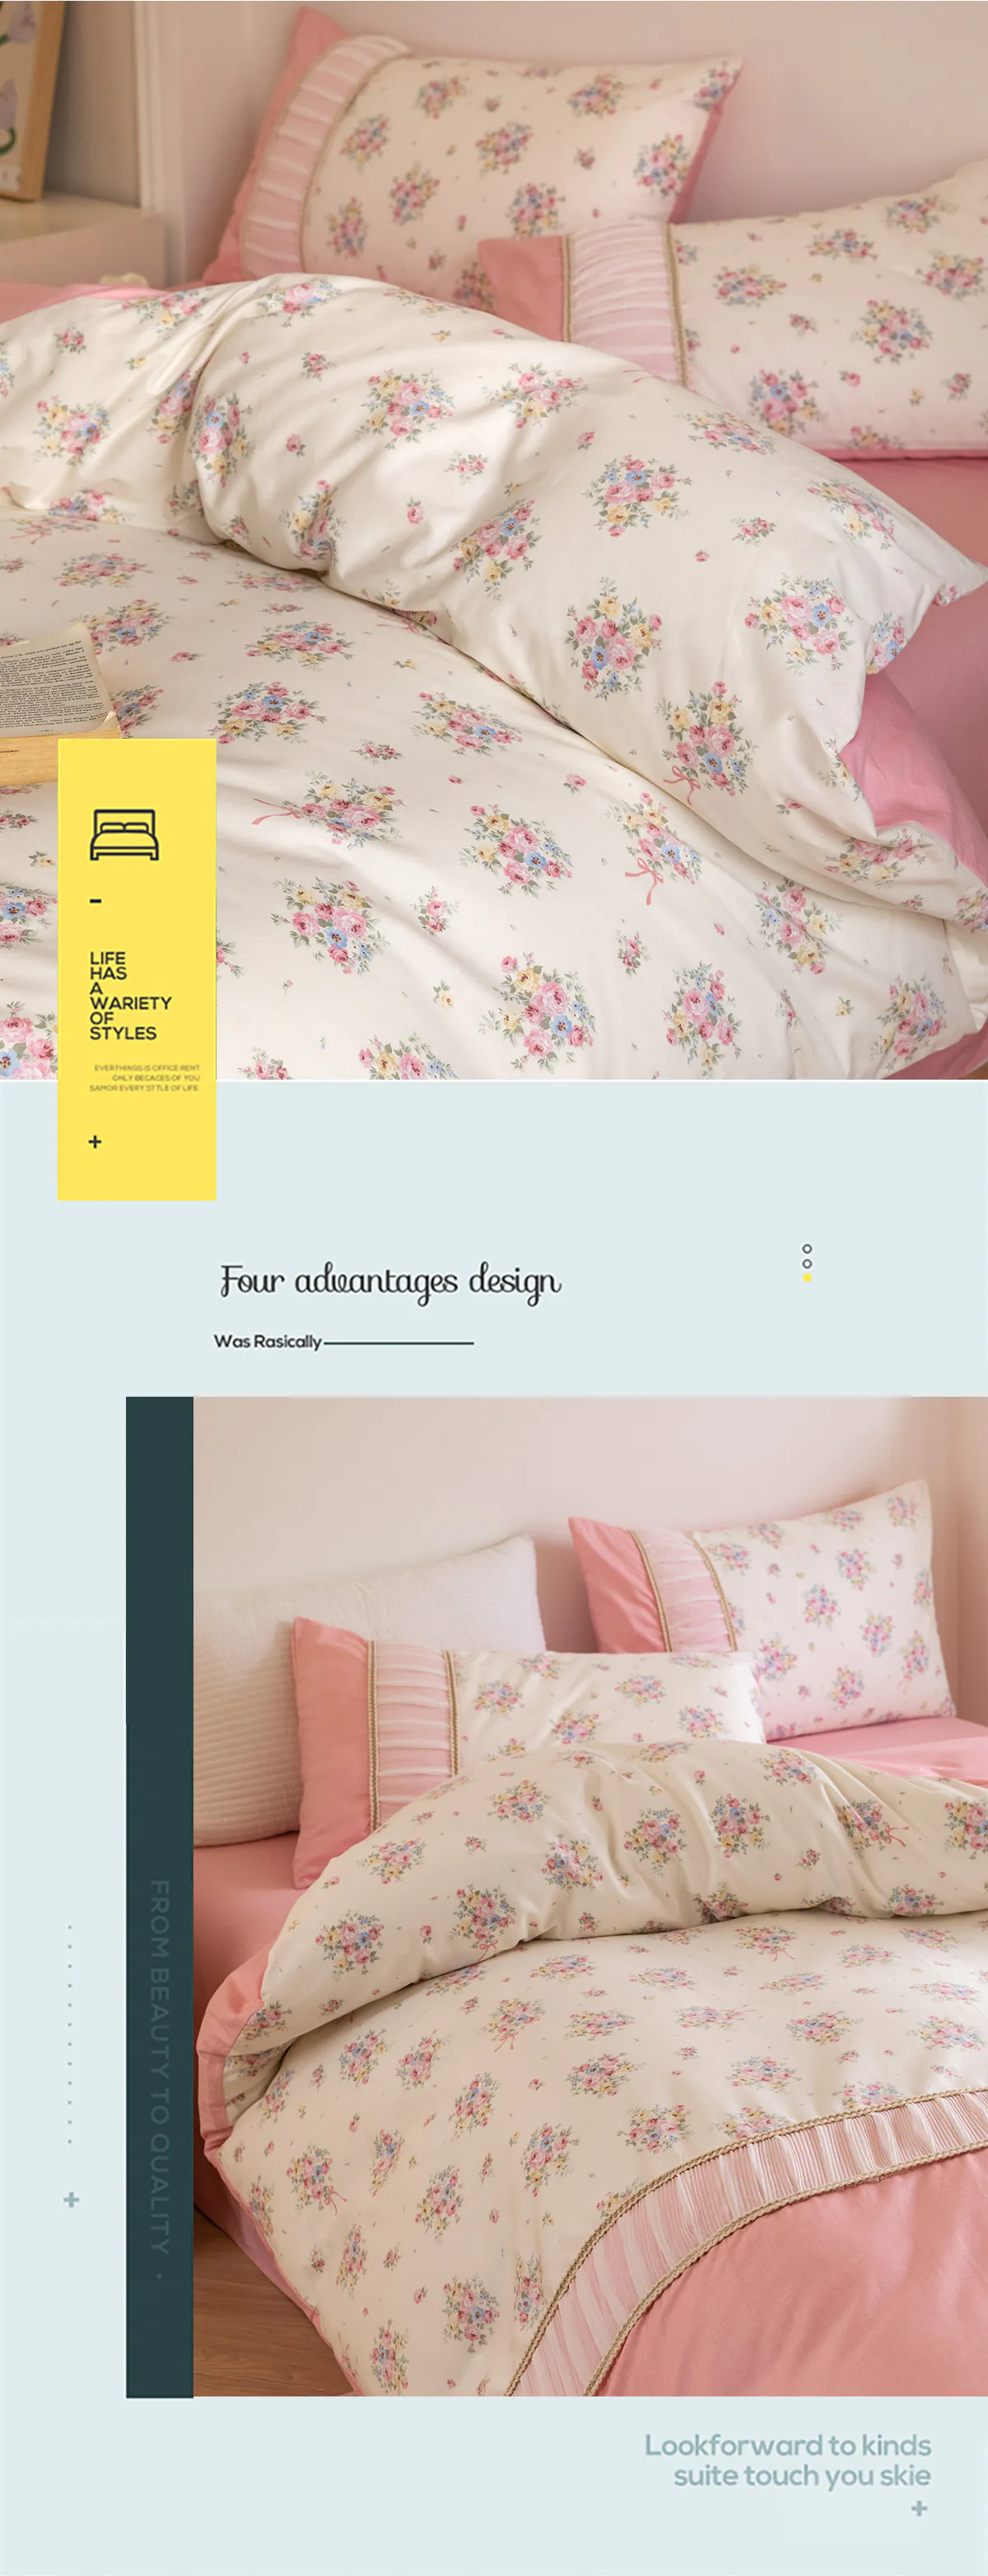 Retro-Princess-Style-100-Cotton-Floral-Duvet-Cover-Bedding-Set12